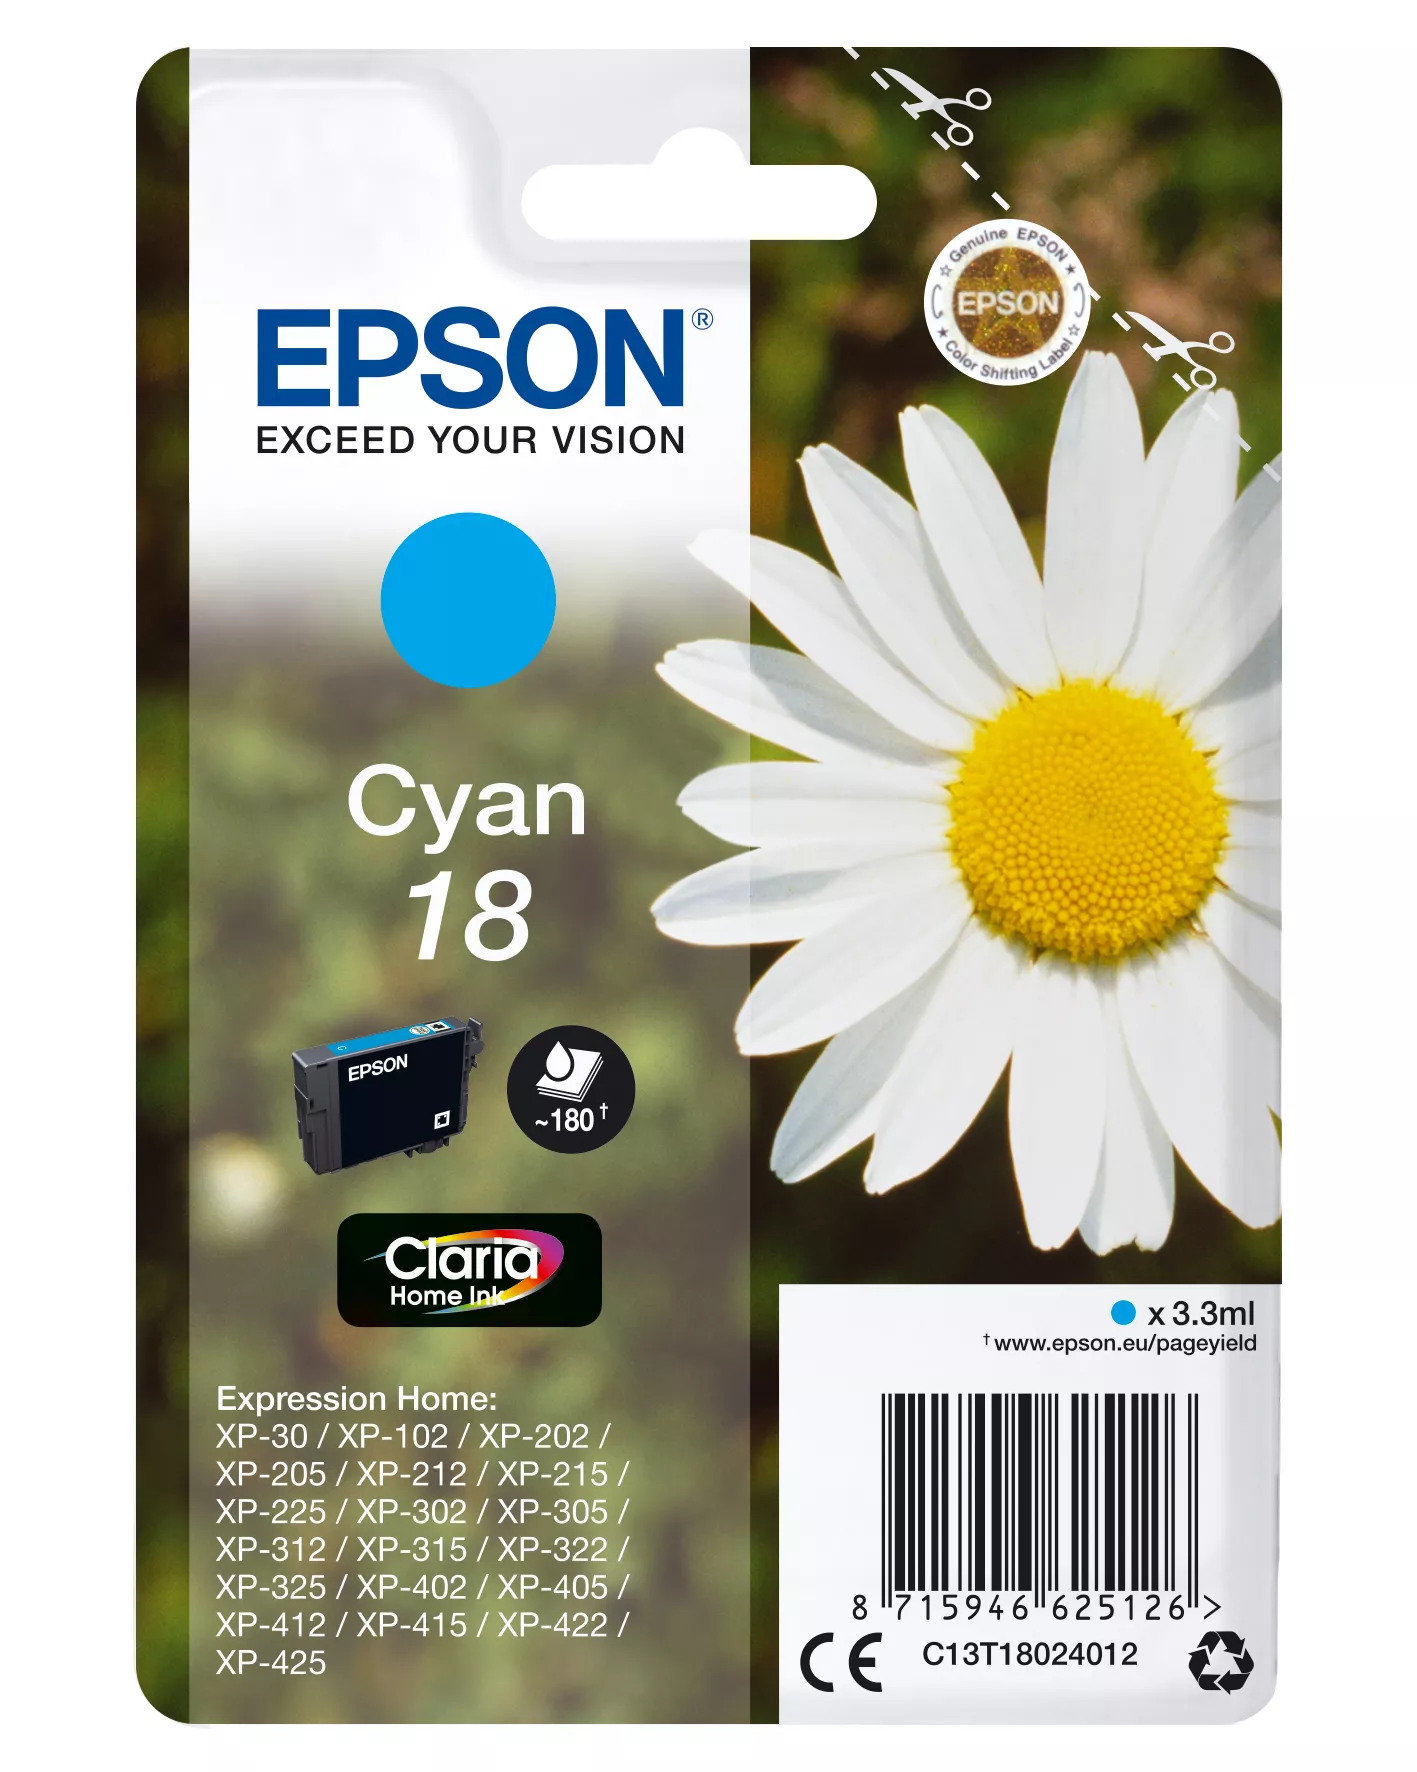 Achat EPSON 18 cartouche dencre cyan capacité standard 3.3ml au meilleur prix